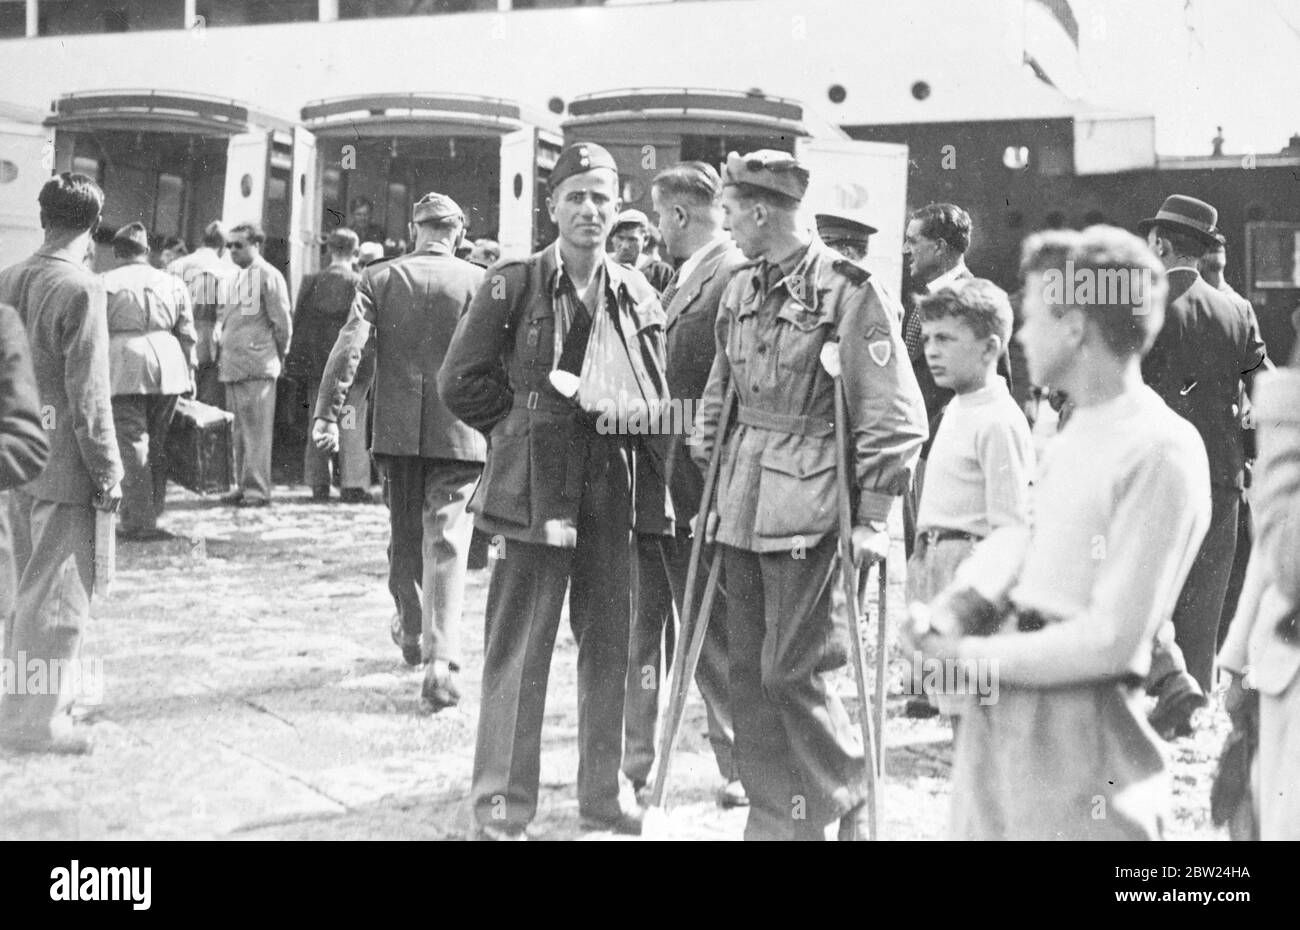 Italienische Opfer kommen aus Spanien nach Hause. Italienische Legionäre verletzt Kämpfe für General Franco in Spanien, in Neapel auf der S S Gradisca angekommen. Sie wurden von faschistischen Parteifunktionären und der Bevölkerung gut empfangen. September 1938 Stockfoto